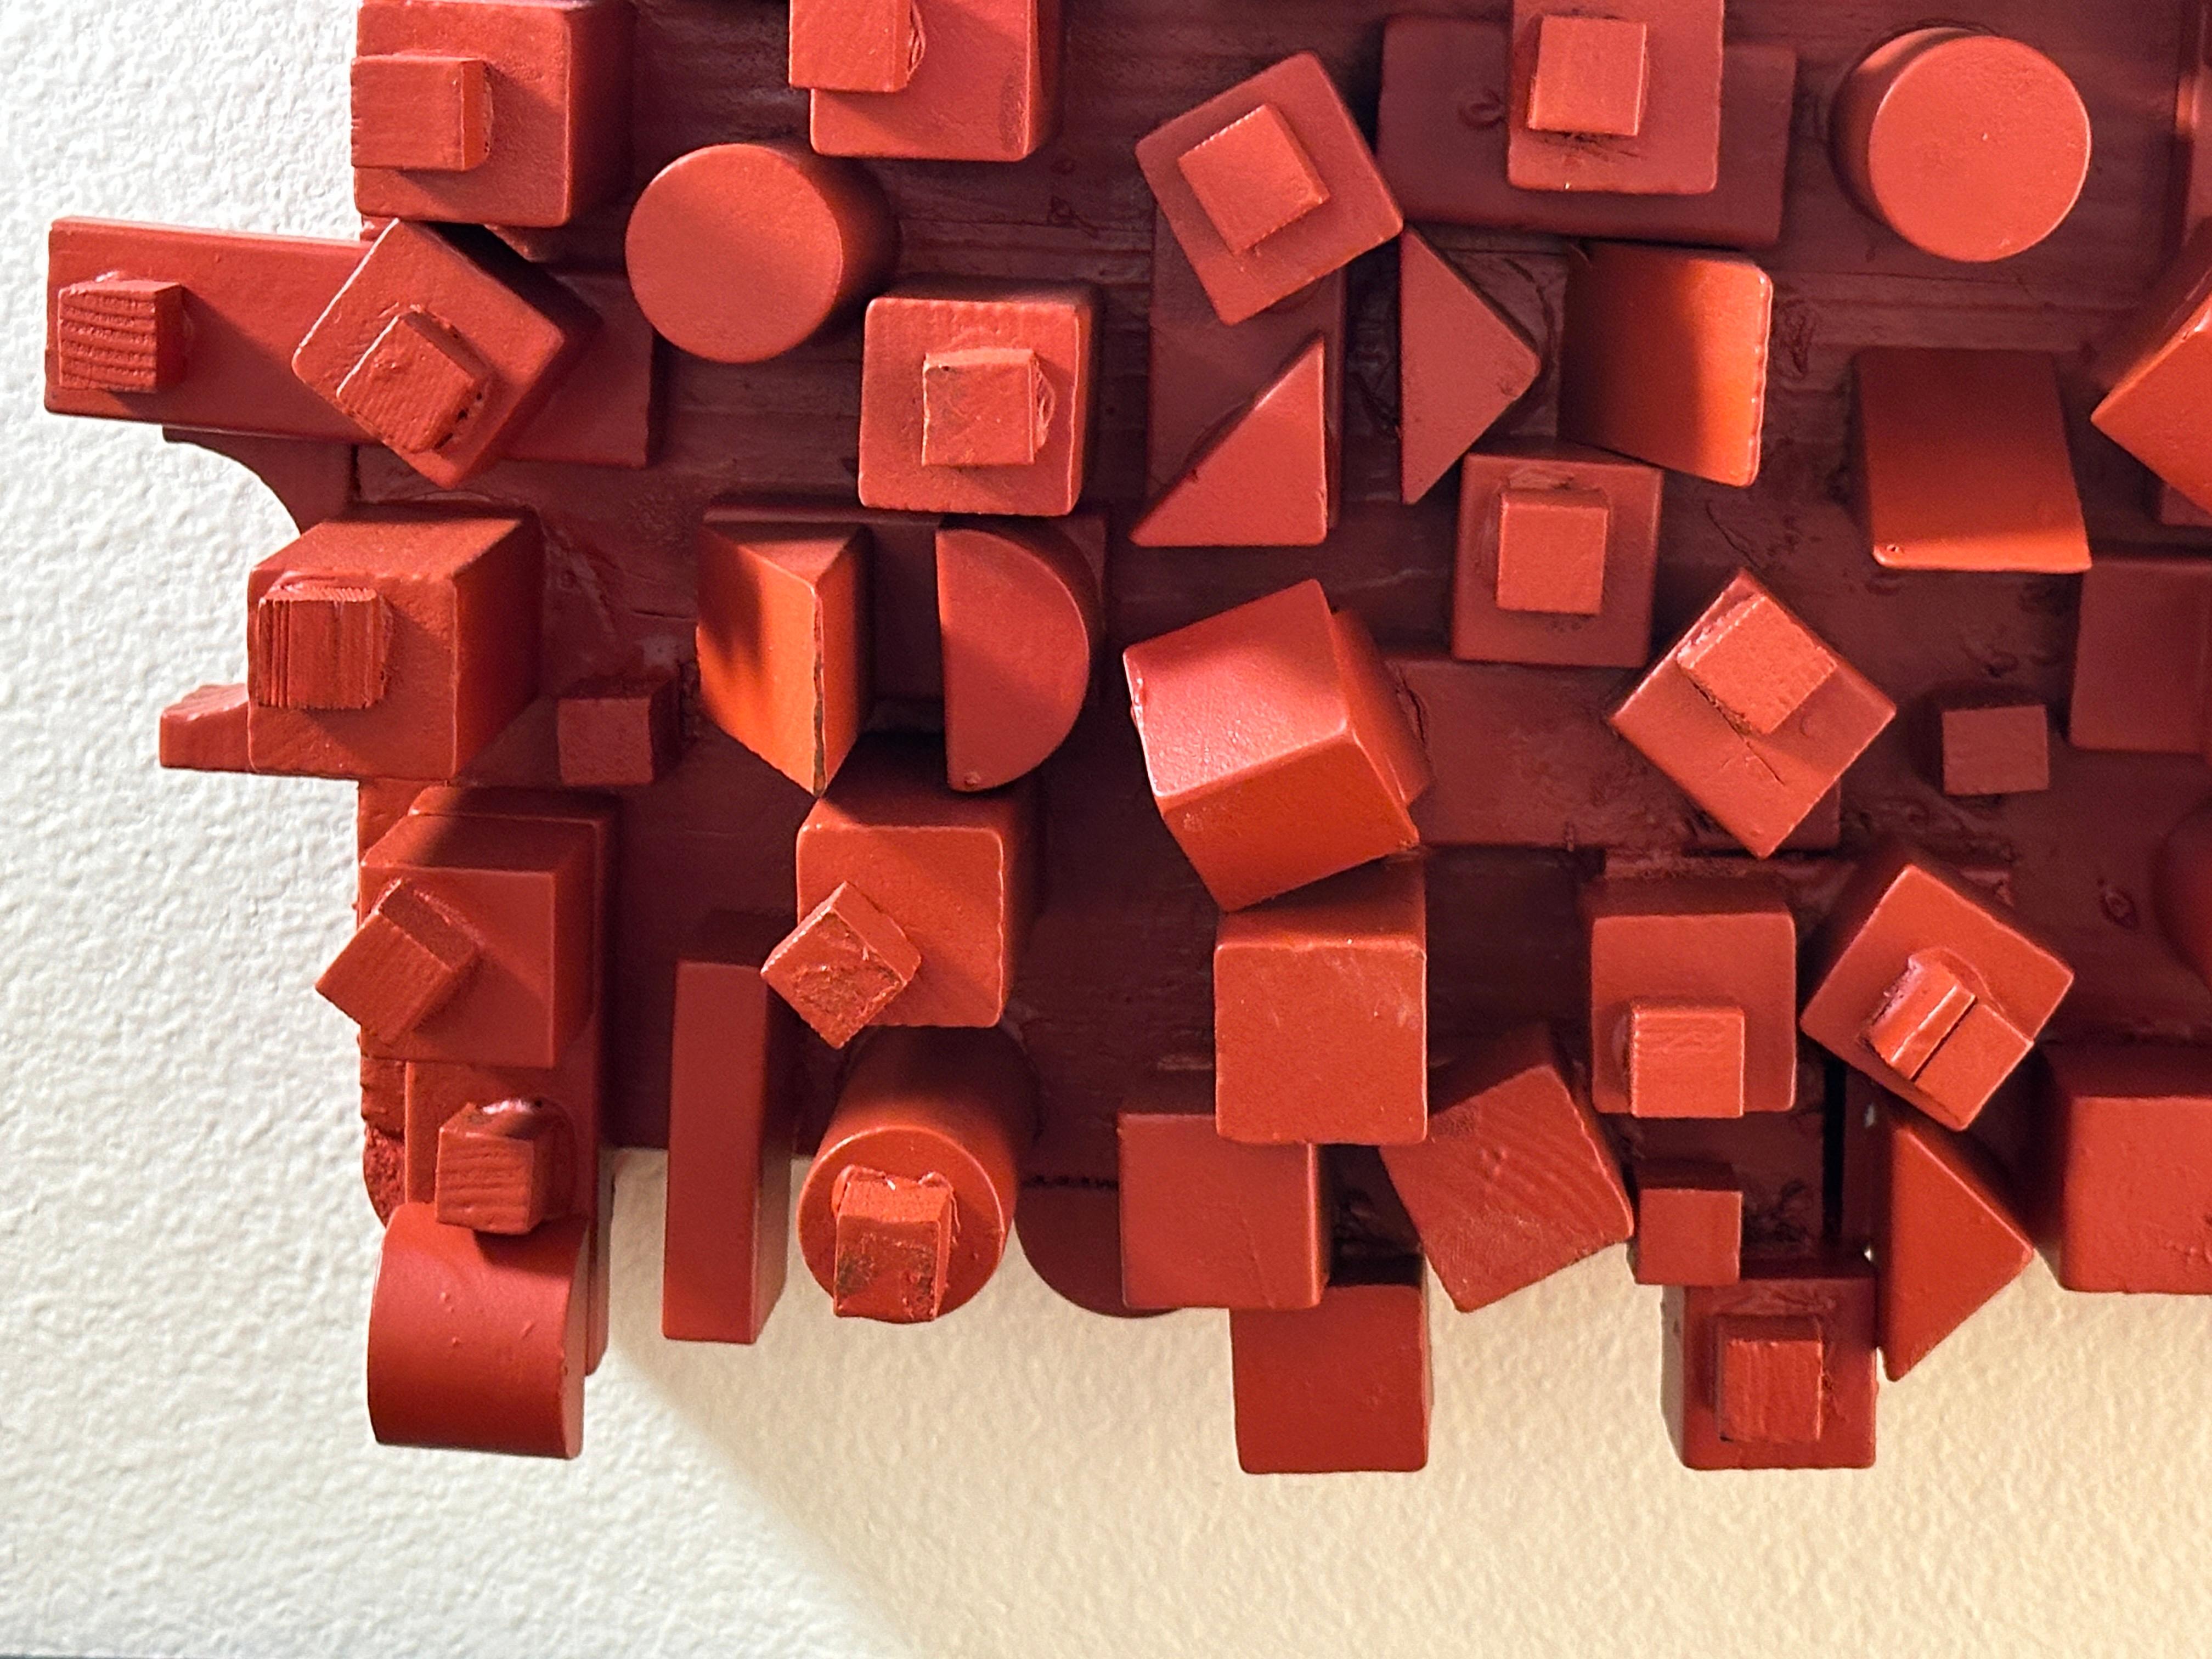 
Cette sculpture murale urbaine contemporaine rectangulaire en bois rouge.  signée C.Cultz, présente un amalgame de formes géométriques apparemment aléatoires, mais composées avec art.

Cette sculpture murale exubérante présente un assortiment de